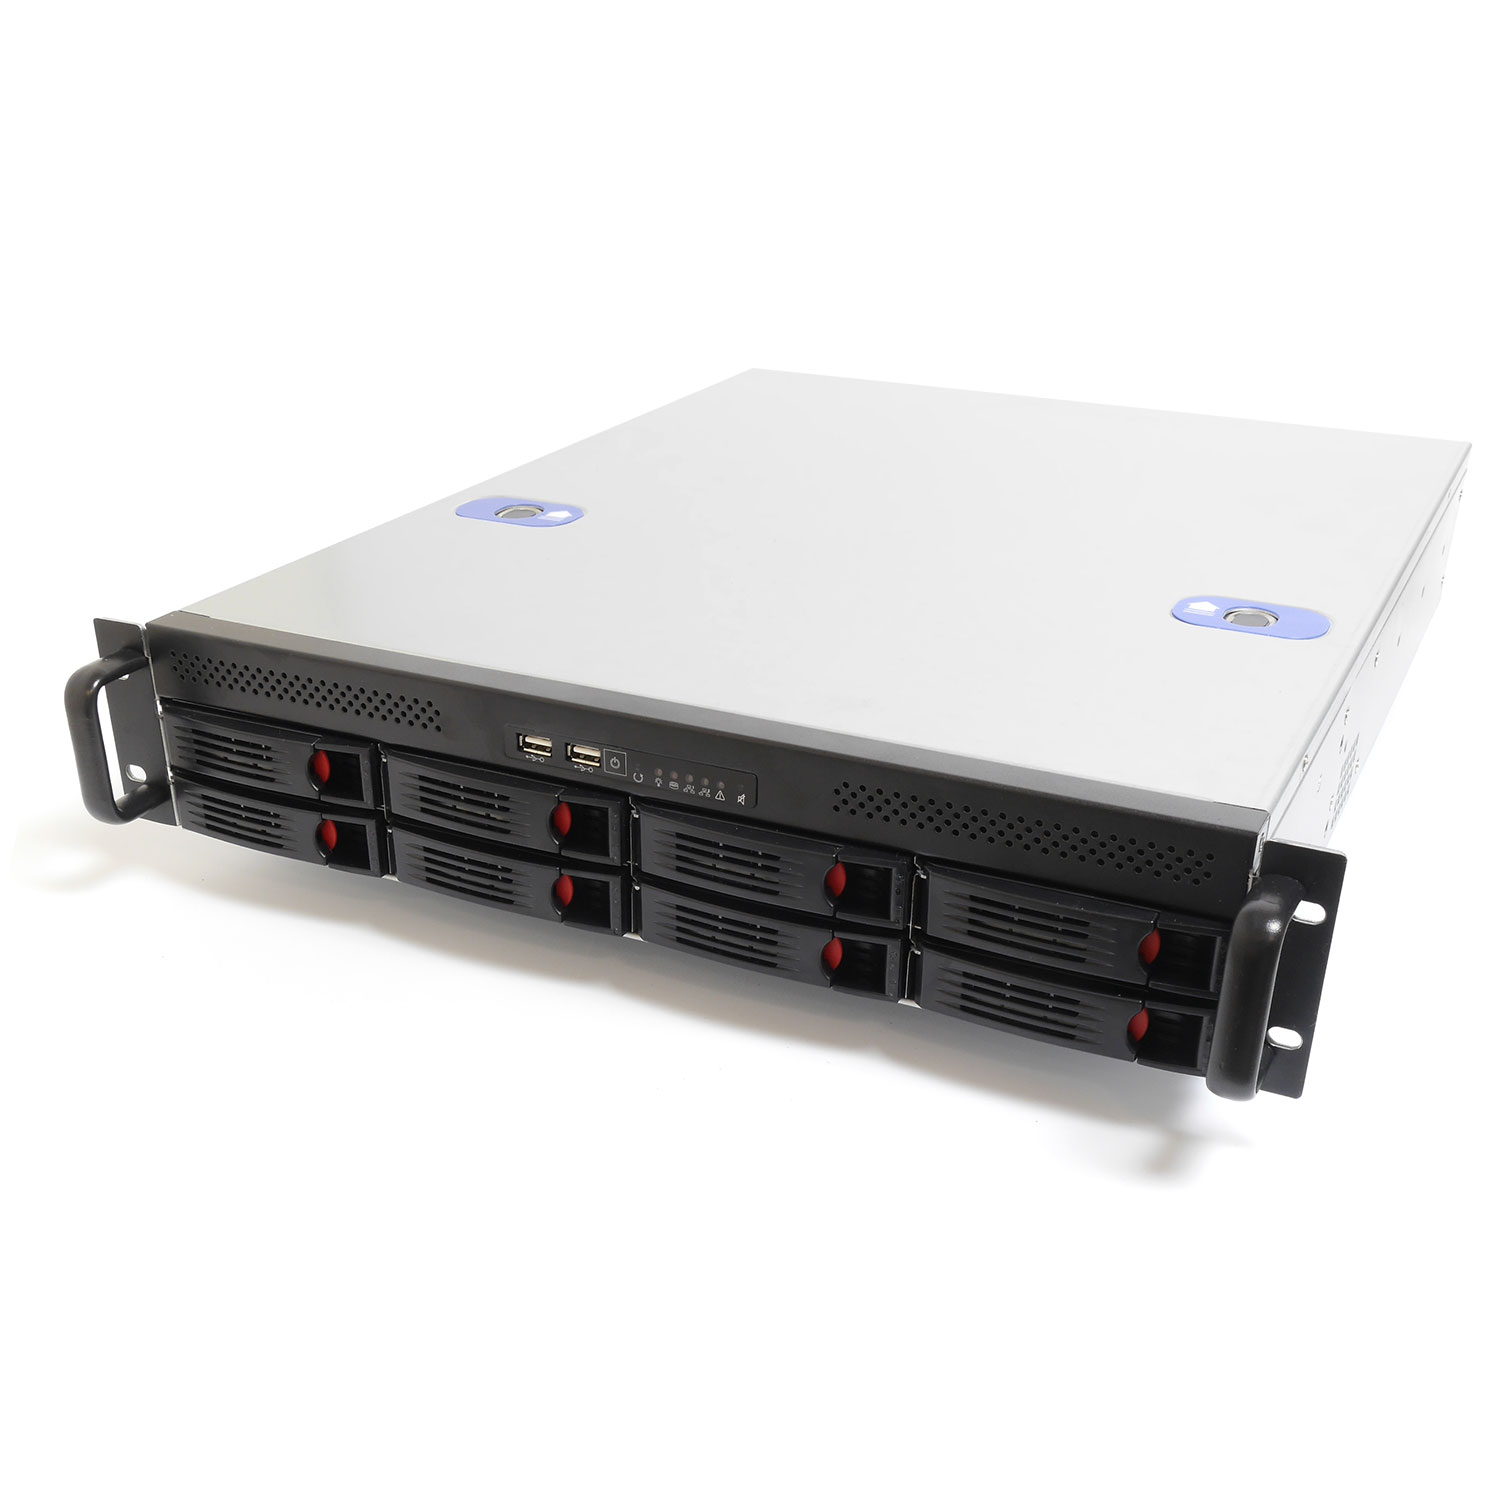 Серверный корпус 2U NR-R2008rev2 600Вт 8xHot Swap SAS/SATA (ATX 10x12, int 3.5, 550mm), Negorack